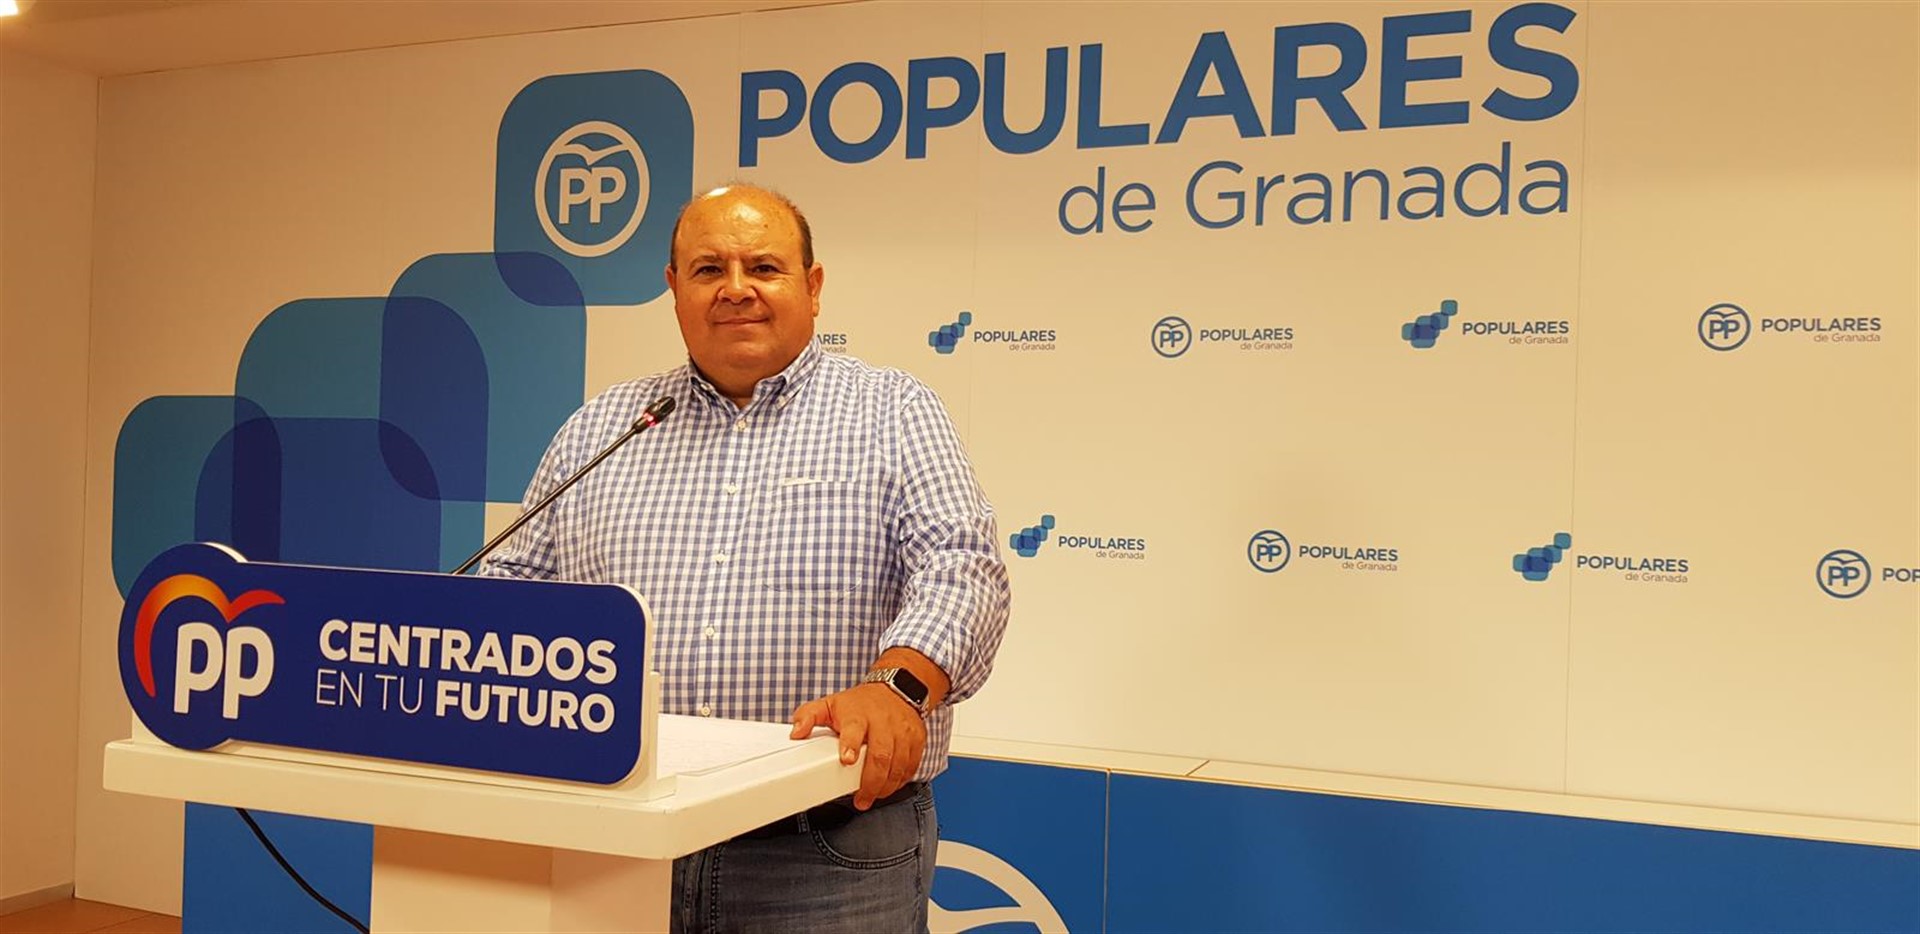 El PP lleva a pleno la petición de dimisión del alcalde de Cúllar Vega